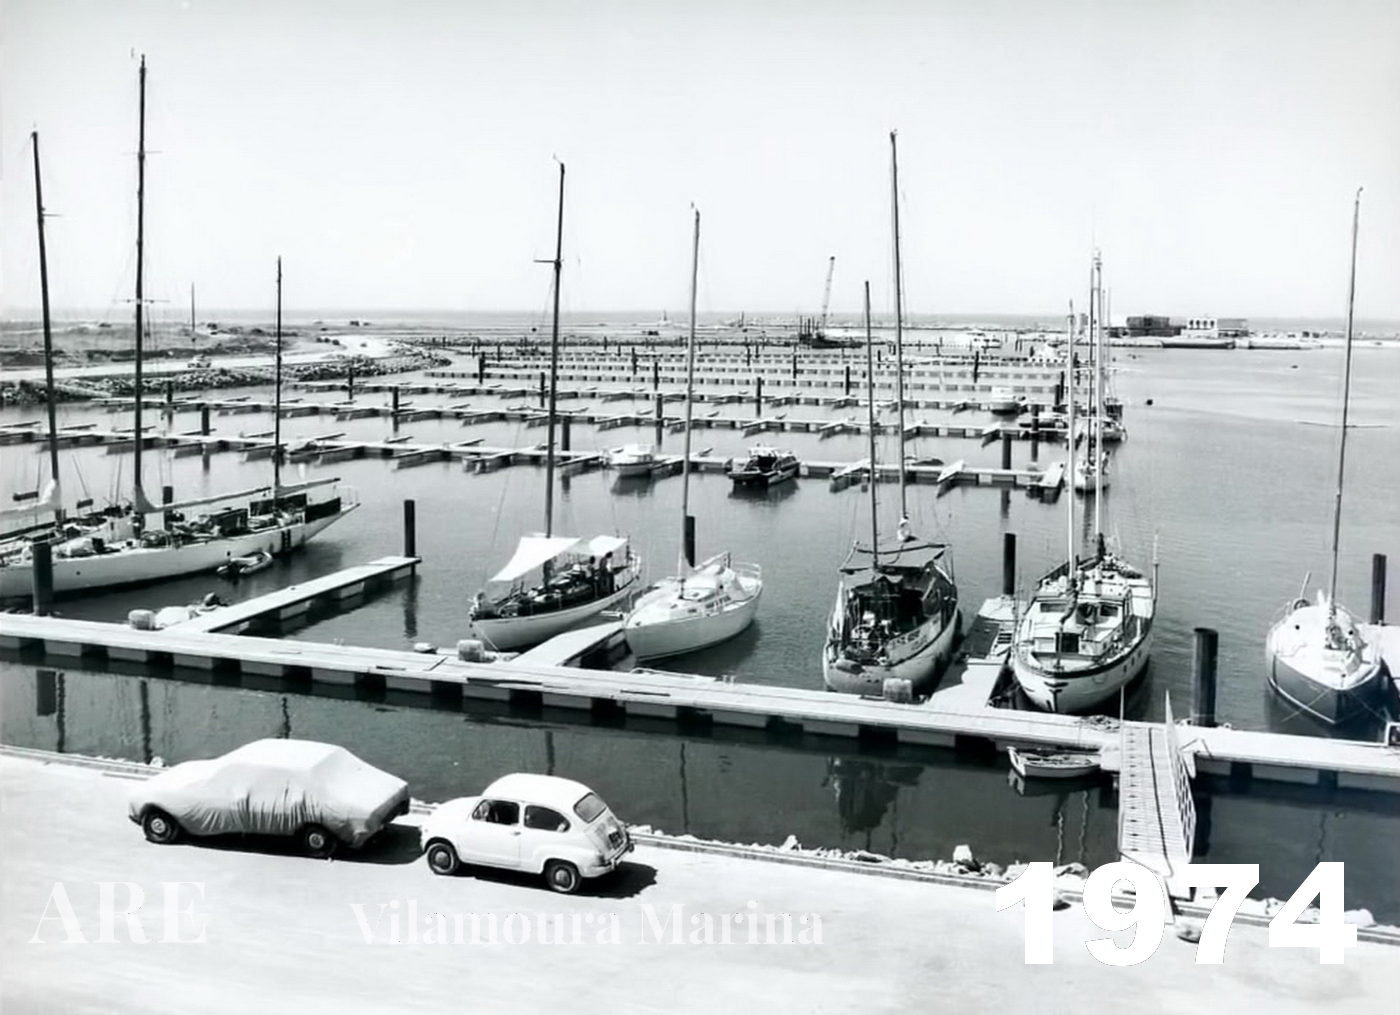 Vista da Marina de Vilamoura em 1974, mostrando sua fase inicial a partir de uma perspectiva de rua.